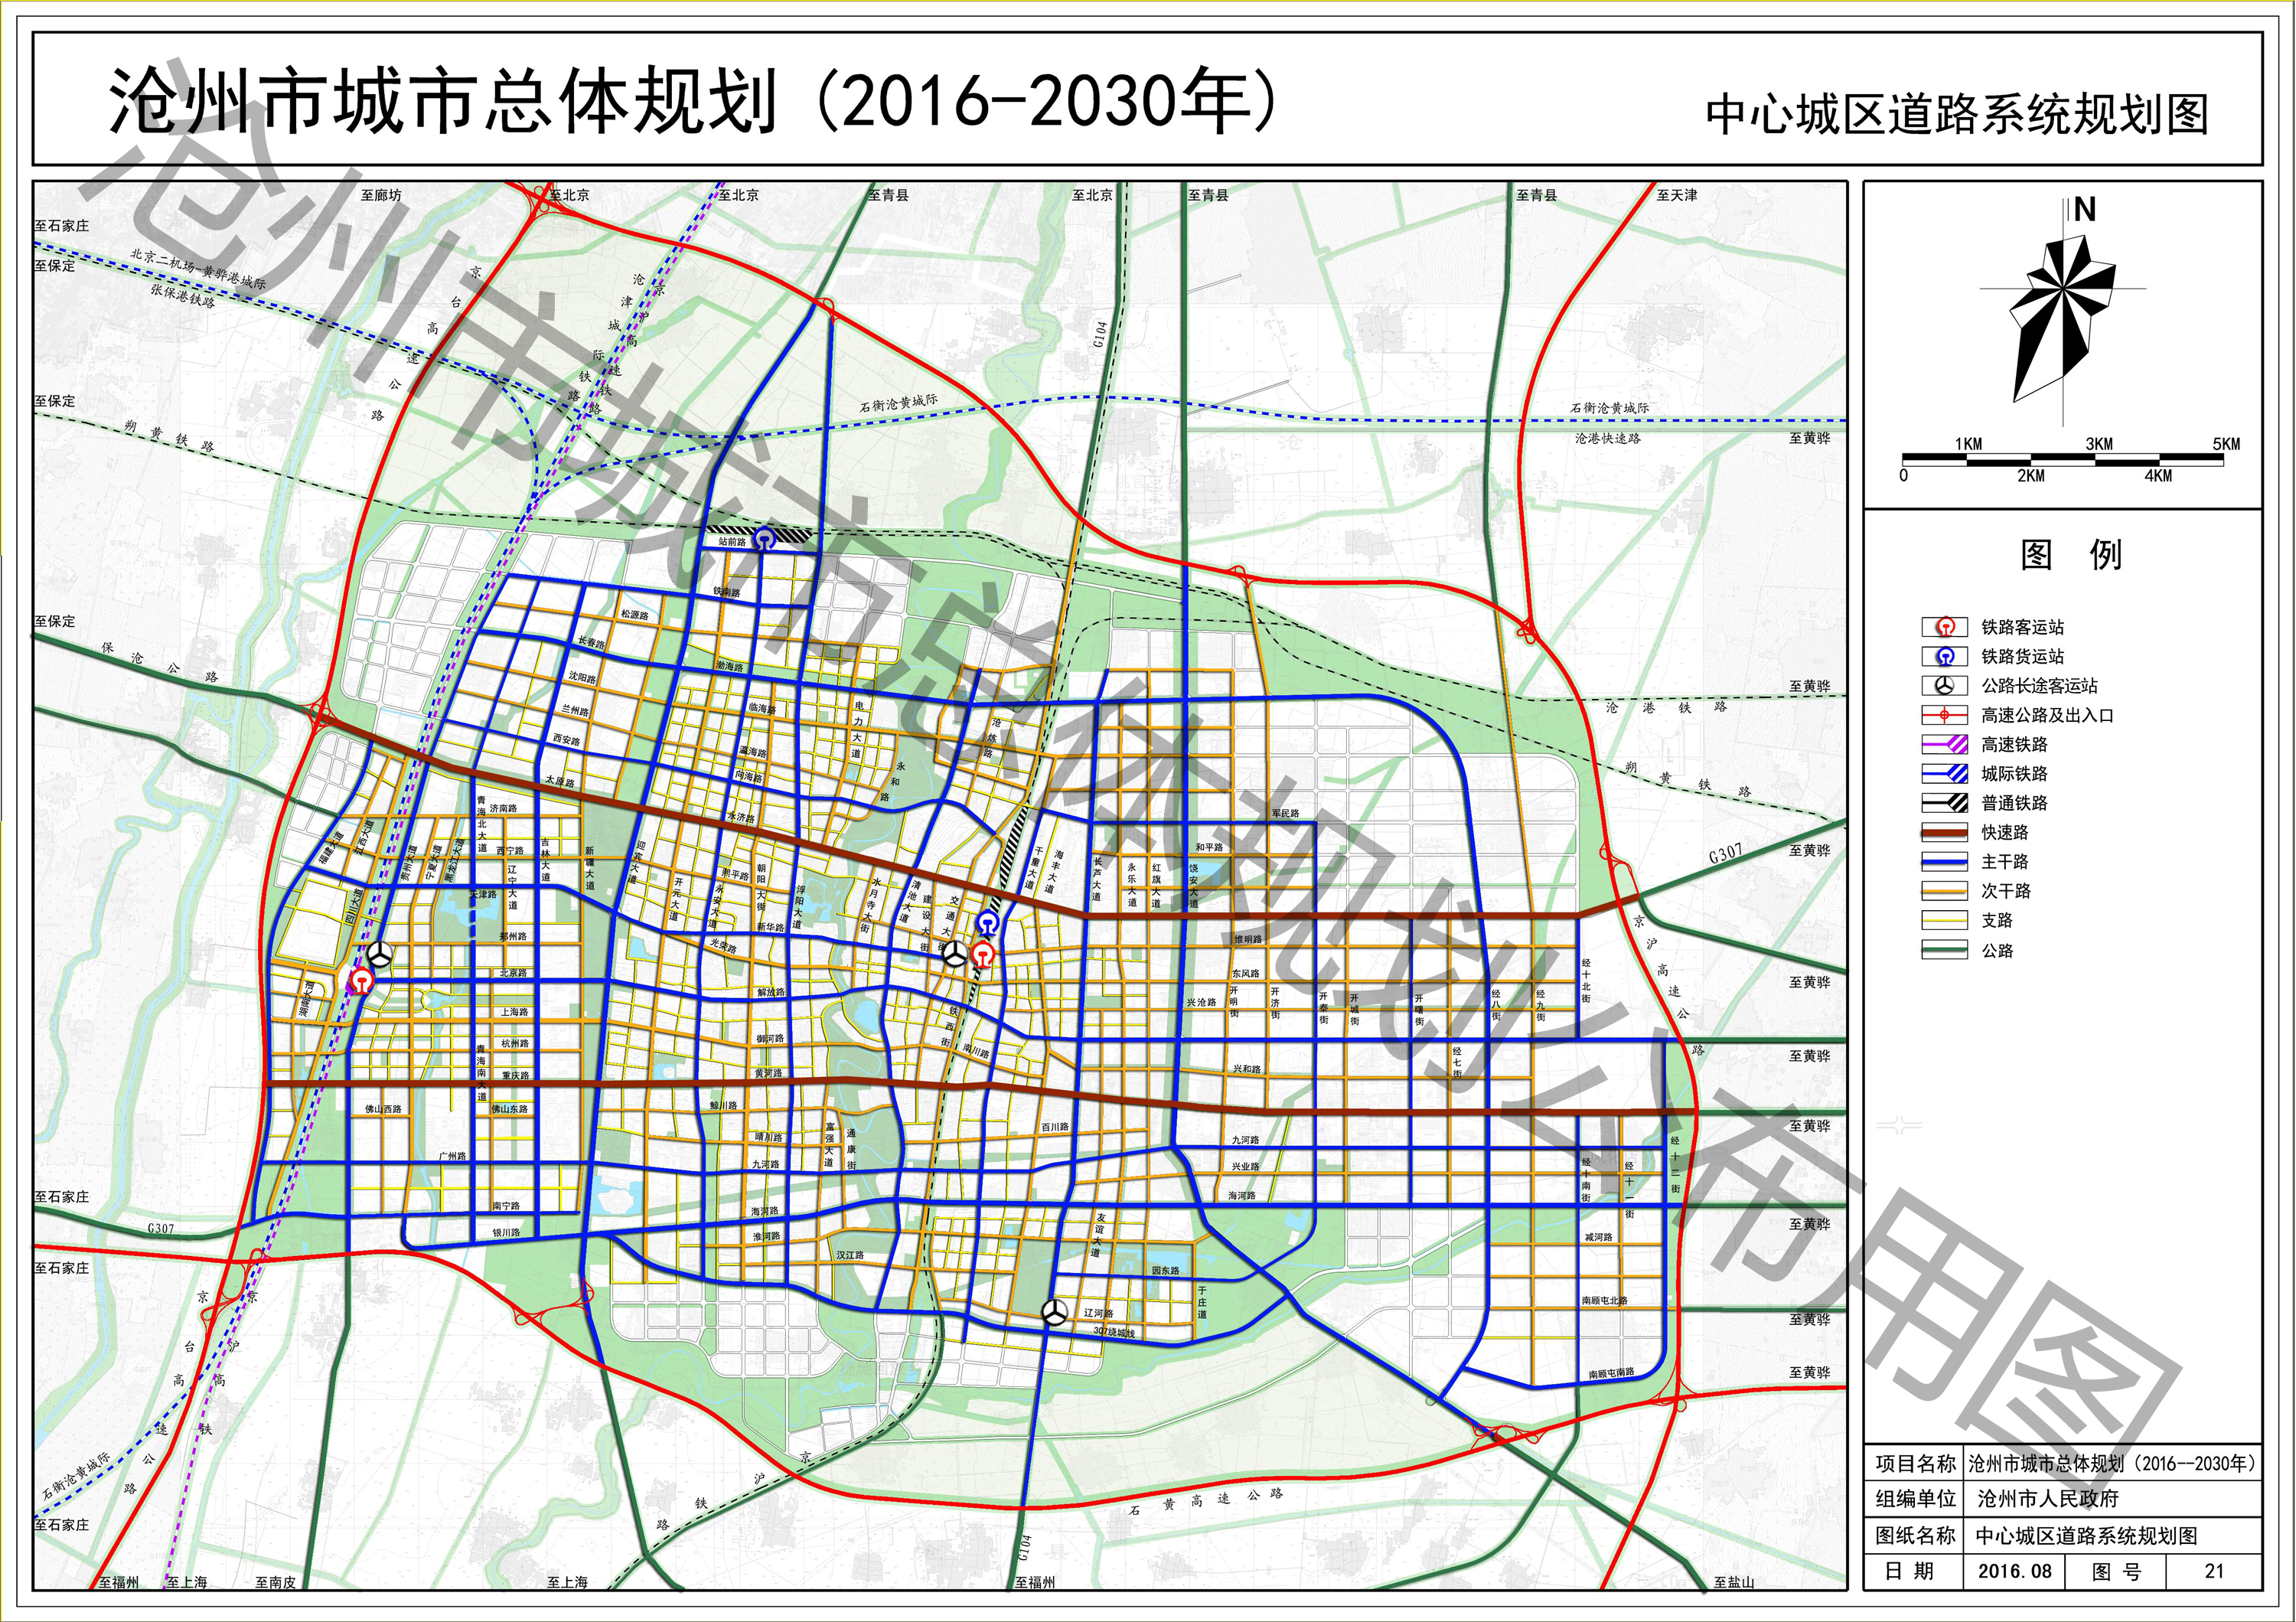 沧州市城市总体规划(2016—2030年) 沧,青,黄,海改区.图片